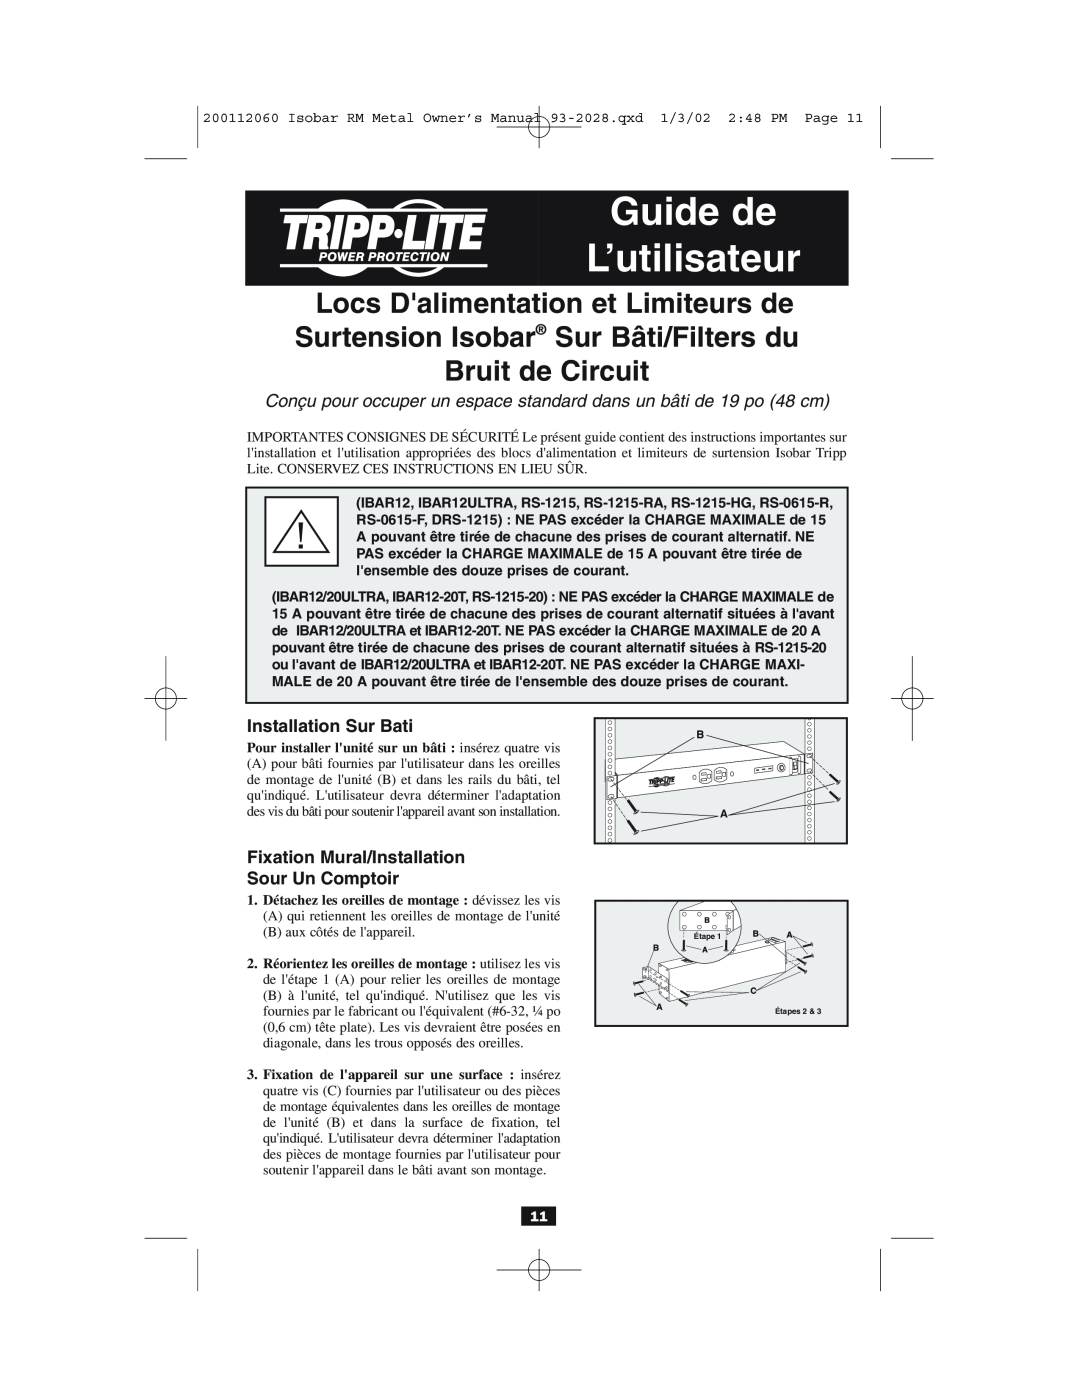 Tripp Lite RS-0615-R, RS-1215-HG Guide de L’utilisateur, Conçu pour occuper un espace standard dans un bâti de 19 po 48 cm 